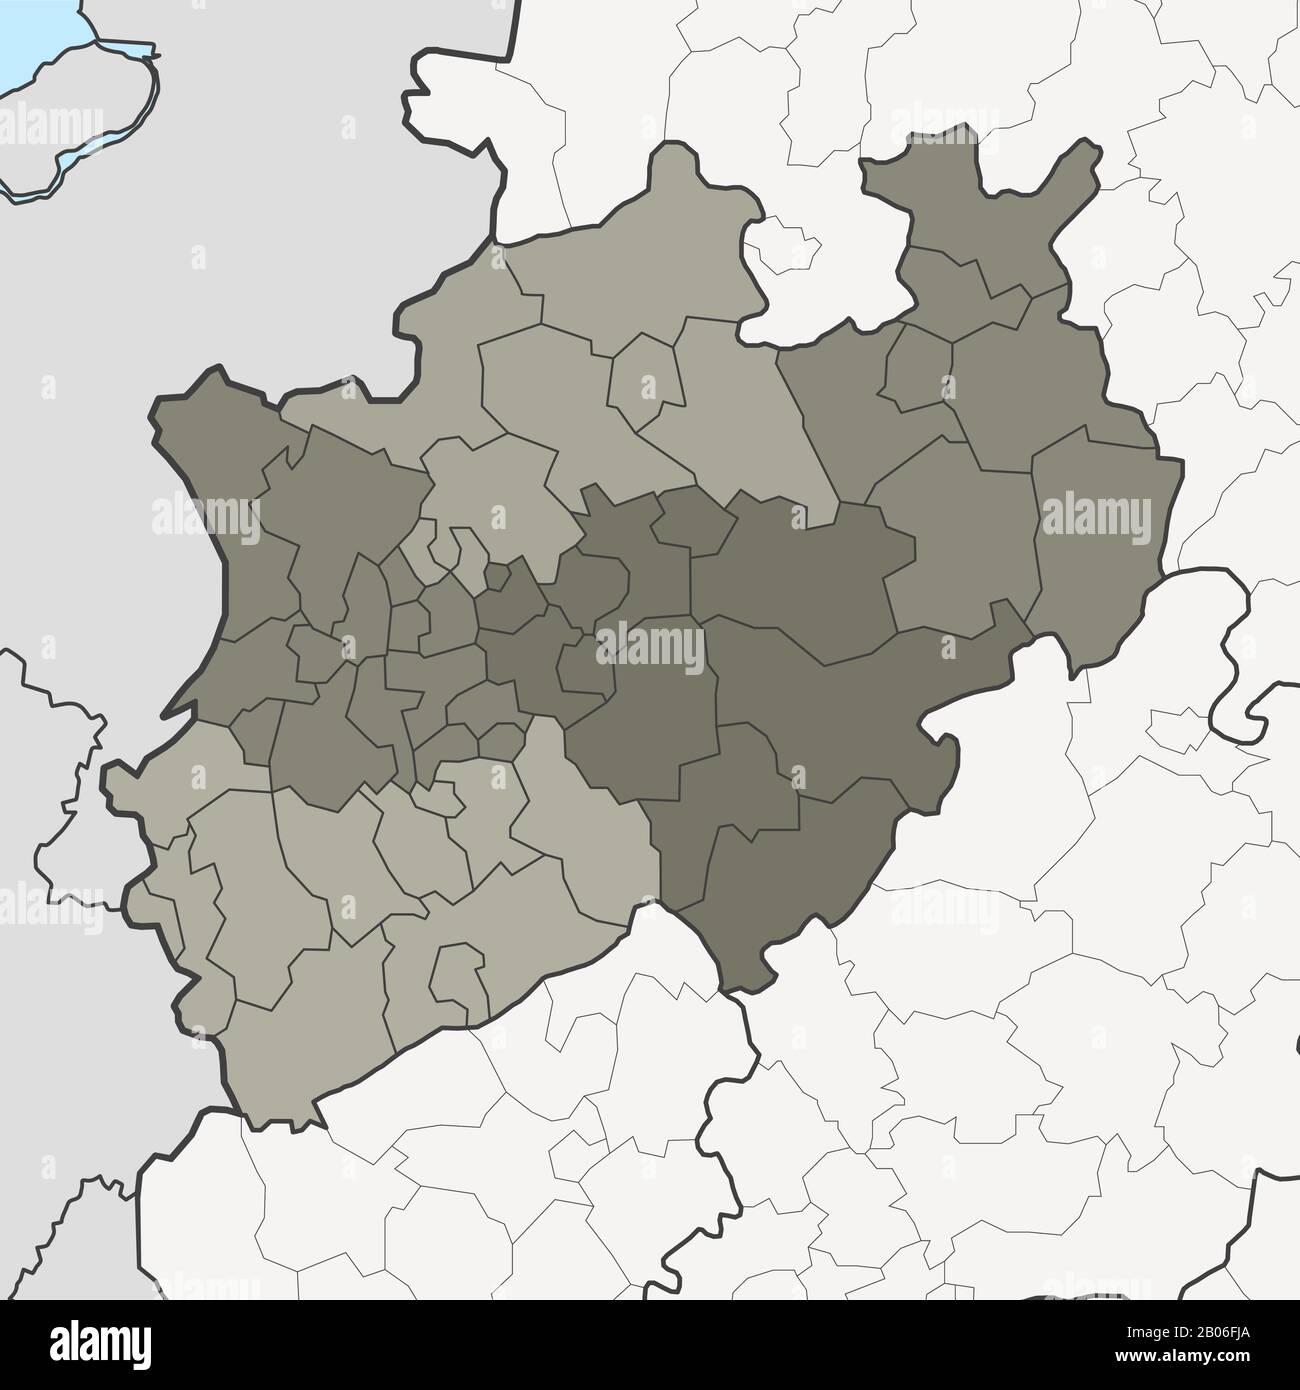 Carte de l'Allemagne Rhénanie du Nord-Westphalie état fédéral avec des régions voisines Illustration de Vecteur